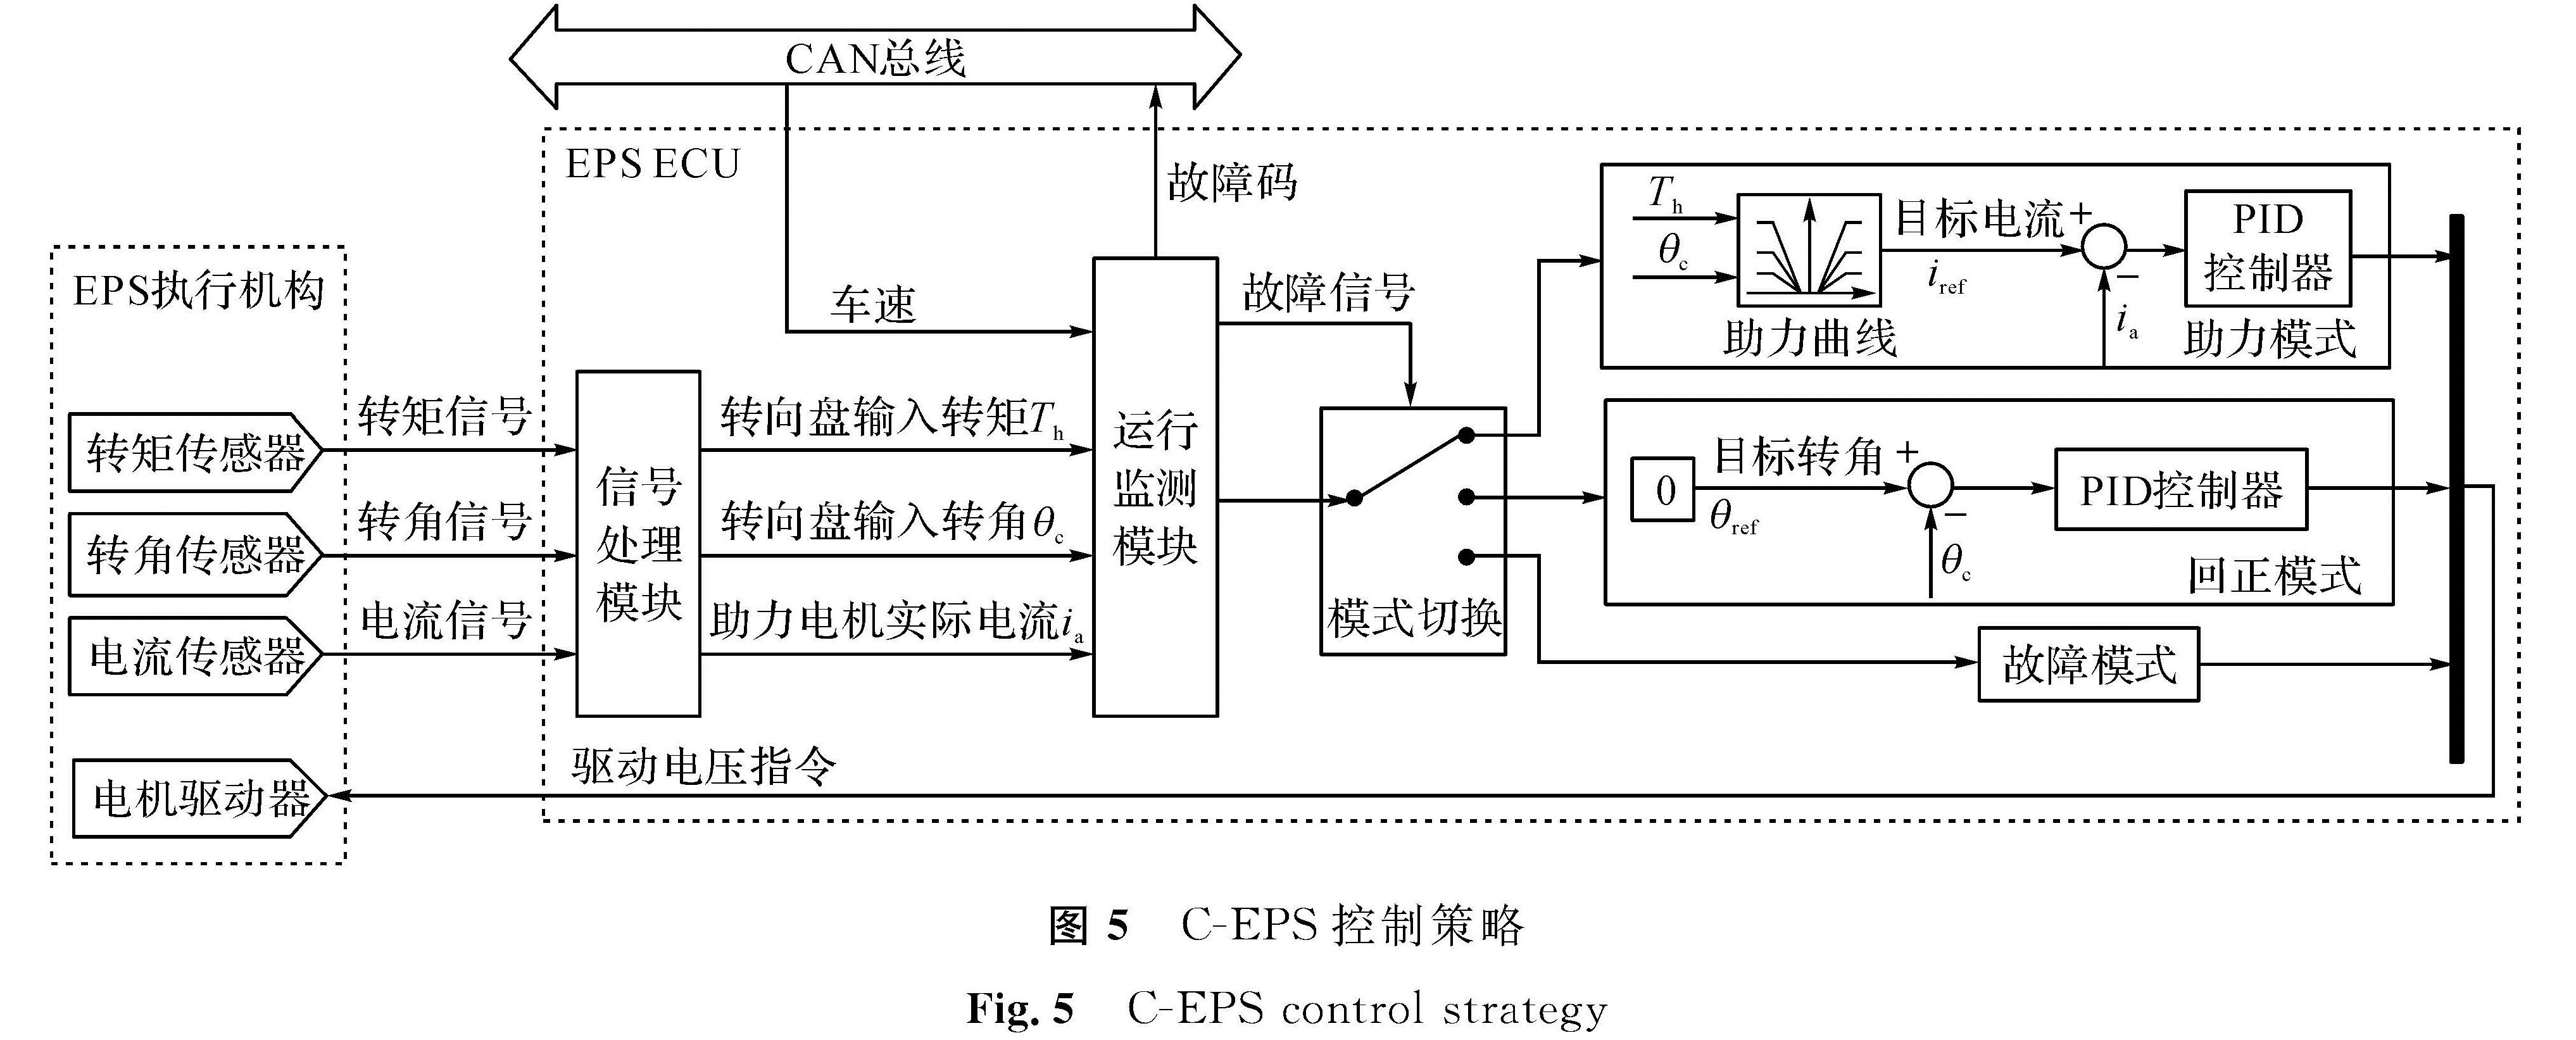 图5 C-EPS控制策略<br/>Fig.5 C-EPS control strategy